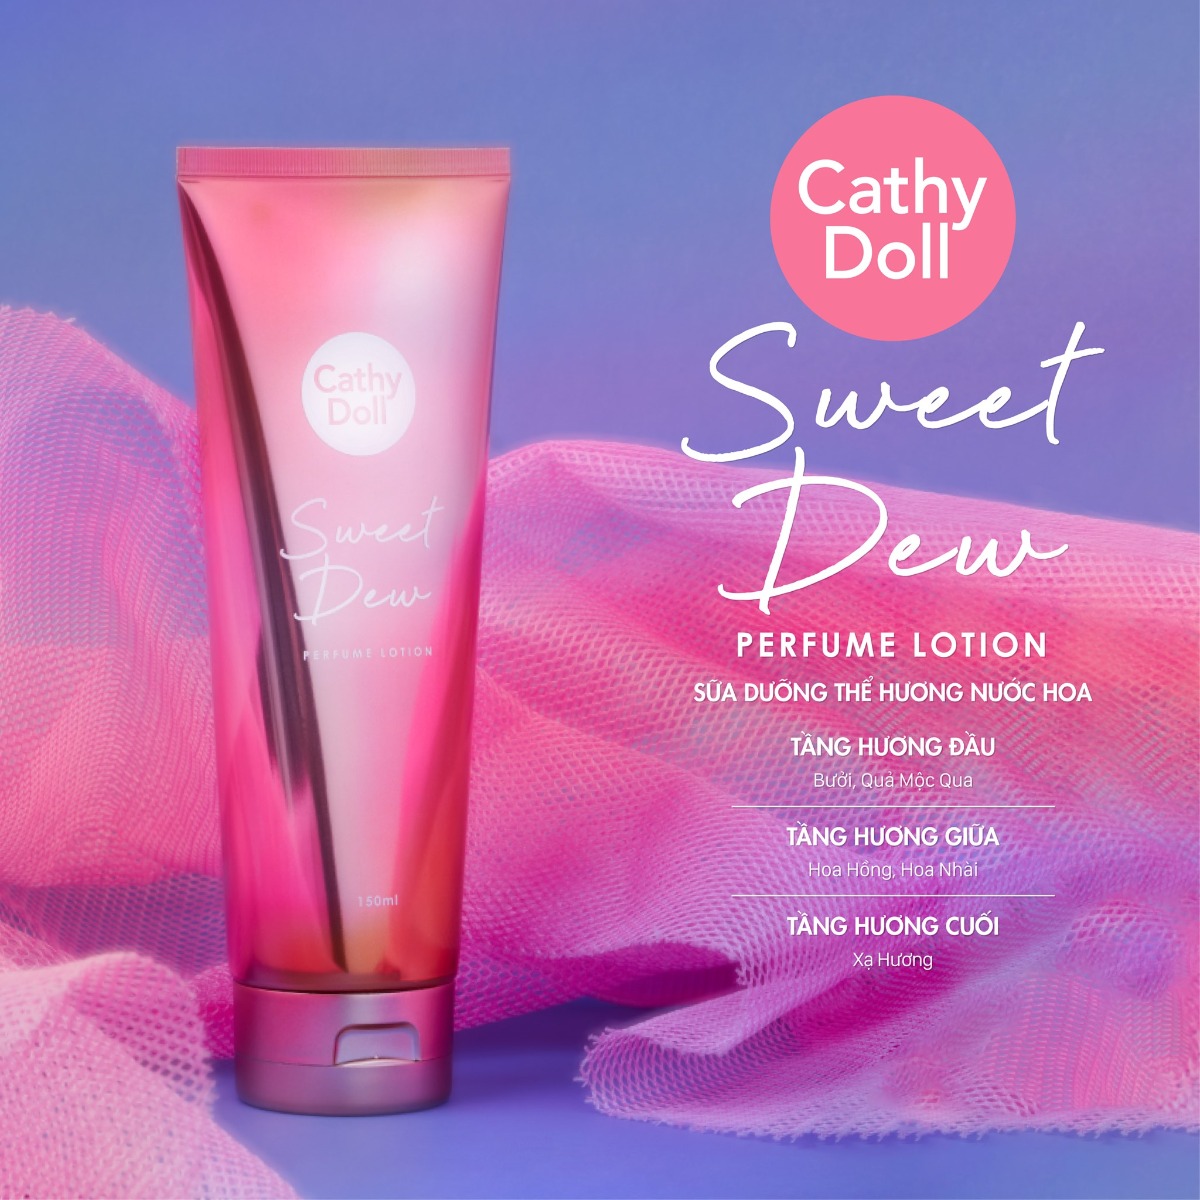 Sữa Dưỡng Thể Cathy Doll Sweet Dew giúp cải thiện làn da khô, nứt nẻ, ngăn ngừa nếp nhăn và lão hoá